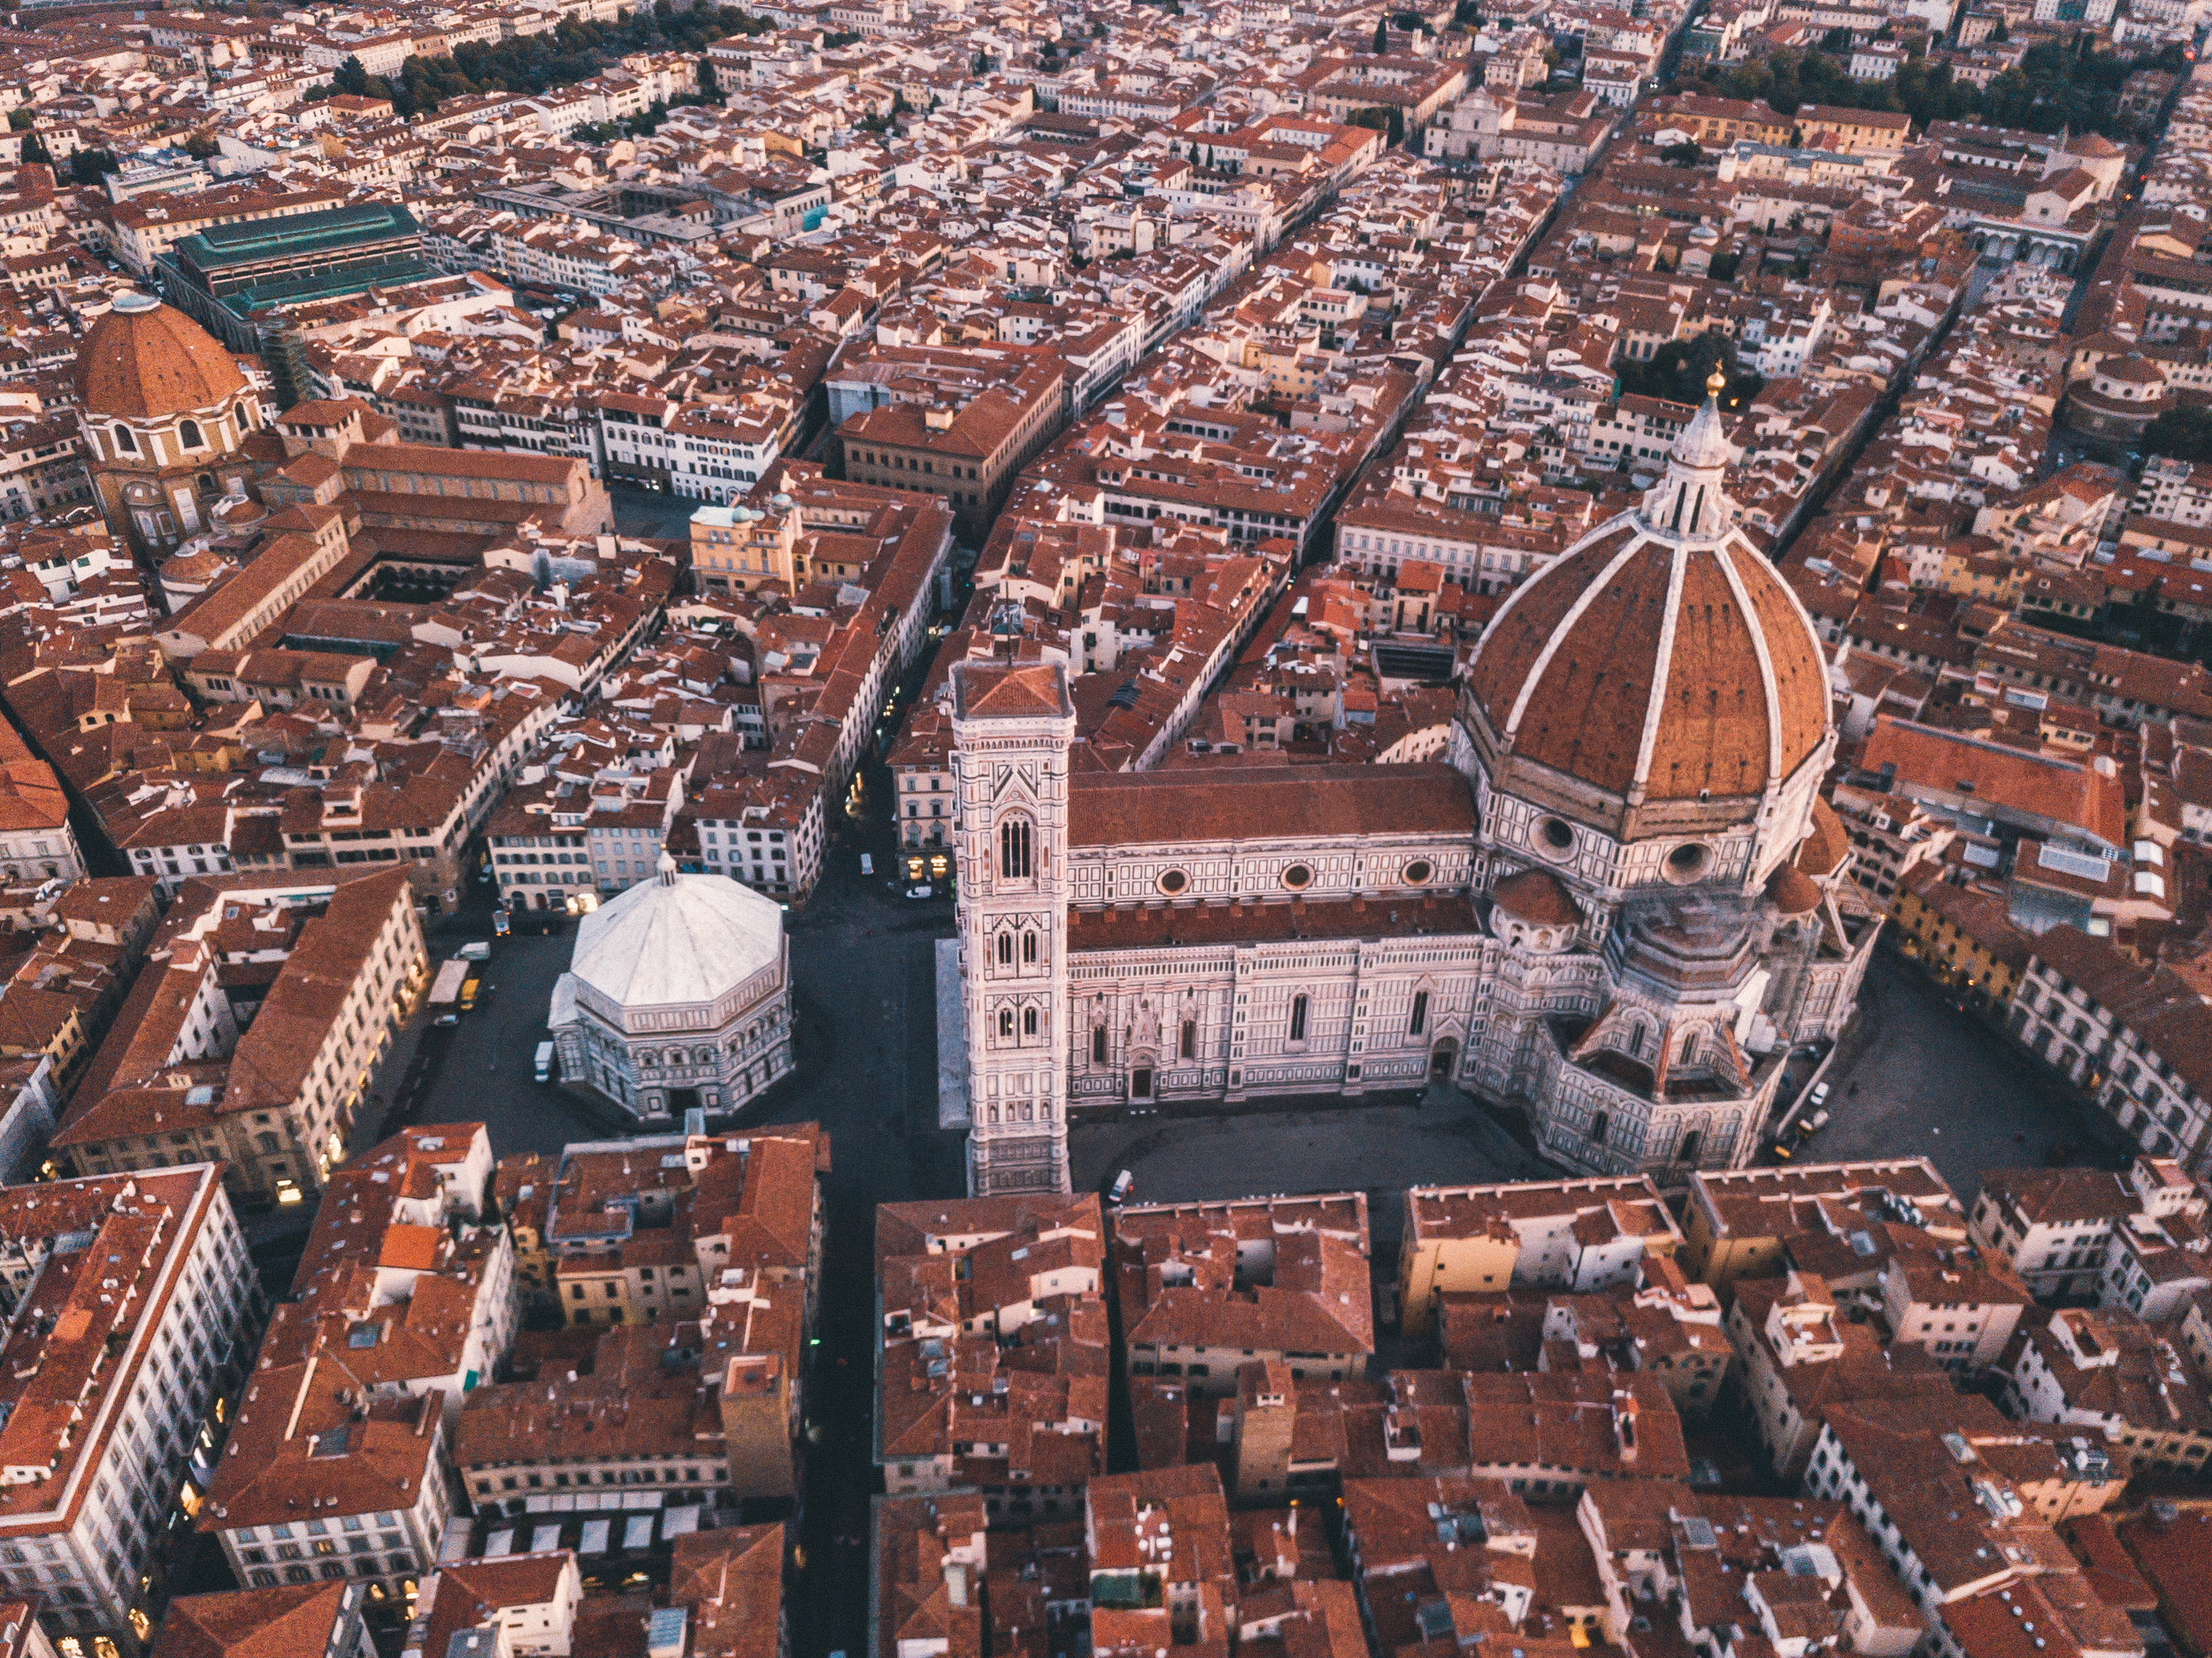 From above, Duomo, Basilica di Santa Maria del Fiore